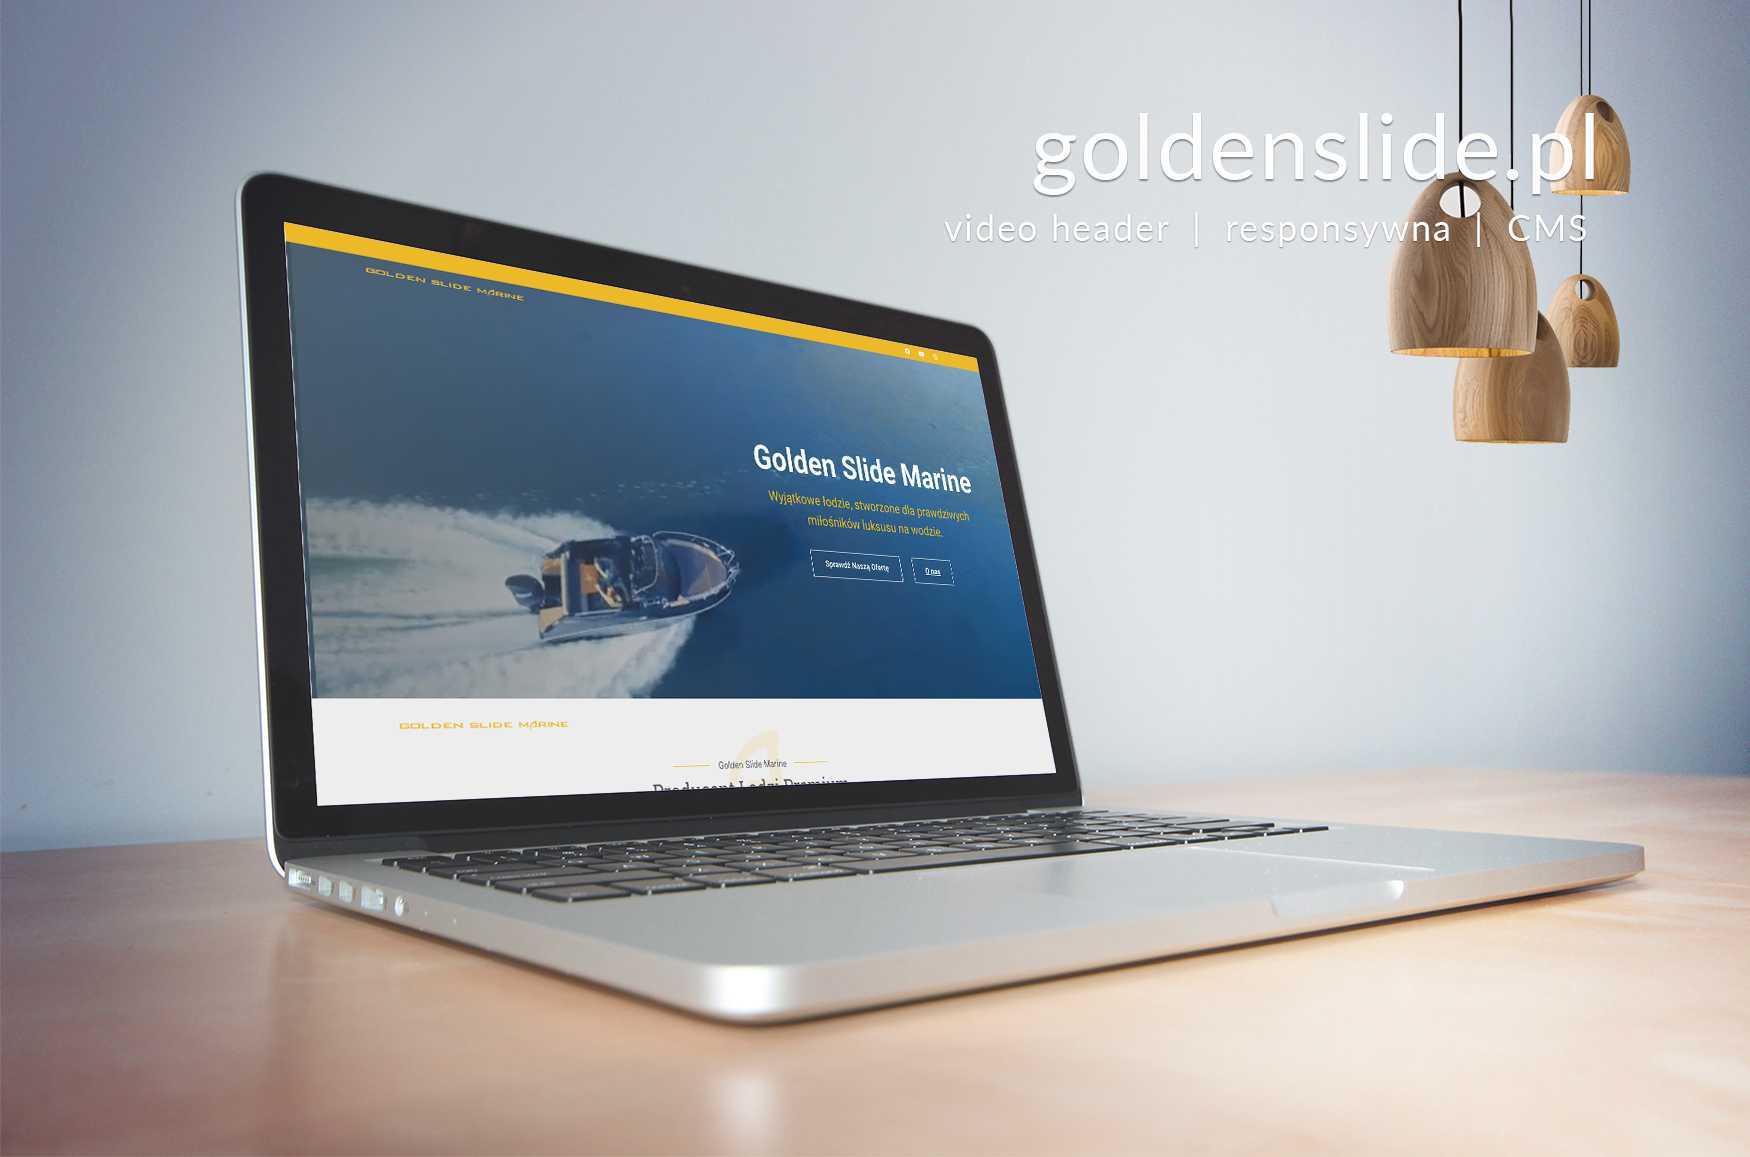 Golden Slide Marine - goldenslide.pl